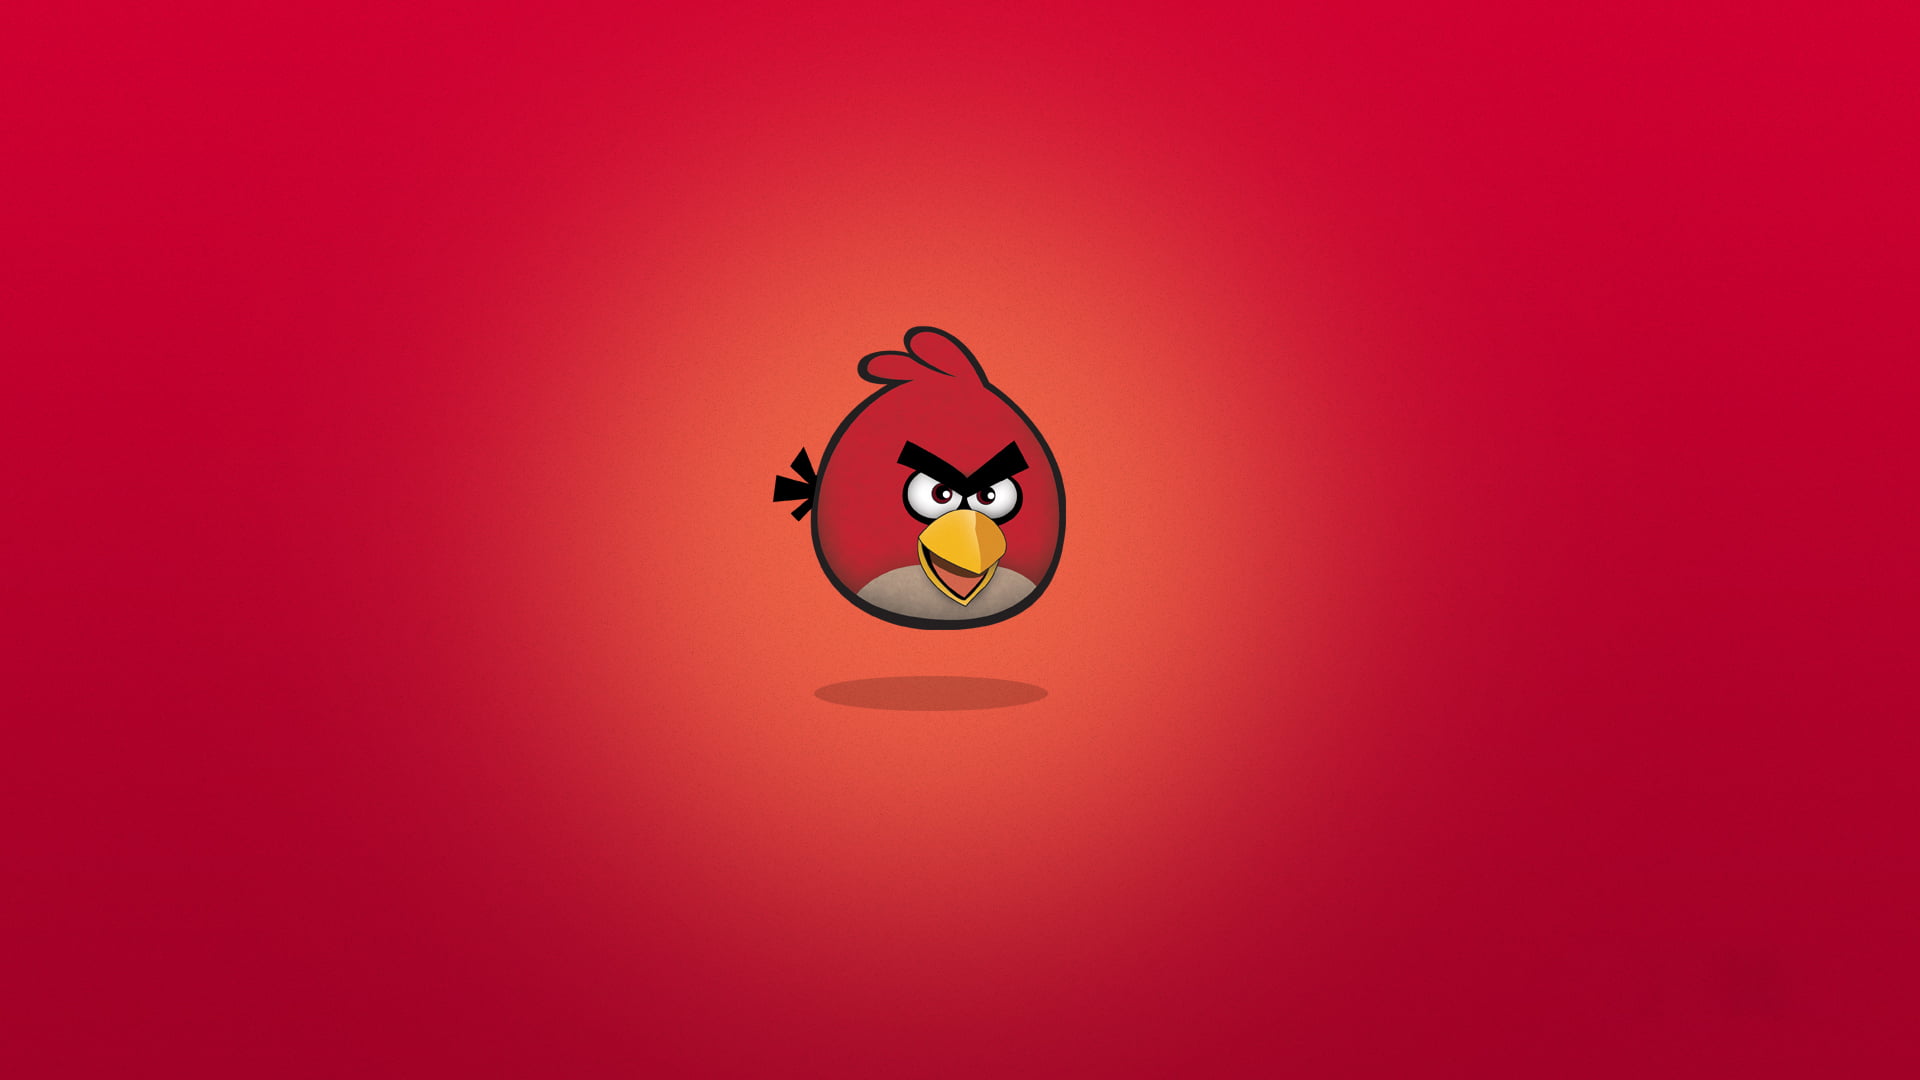 Angry Birds Red digital wallpaper, cartoons, Rio, illustration